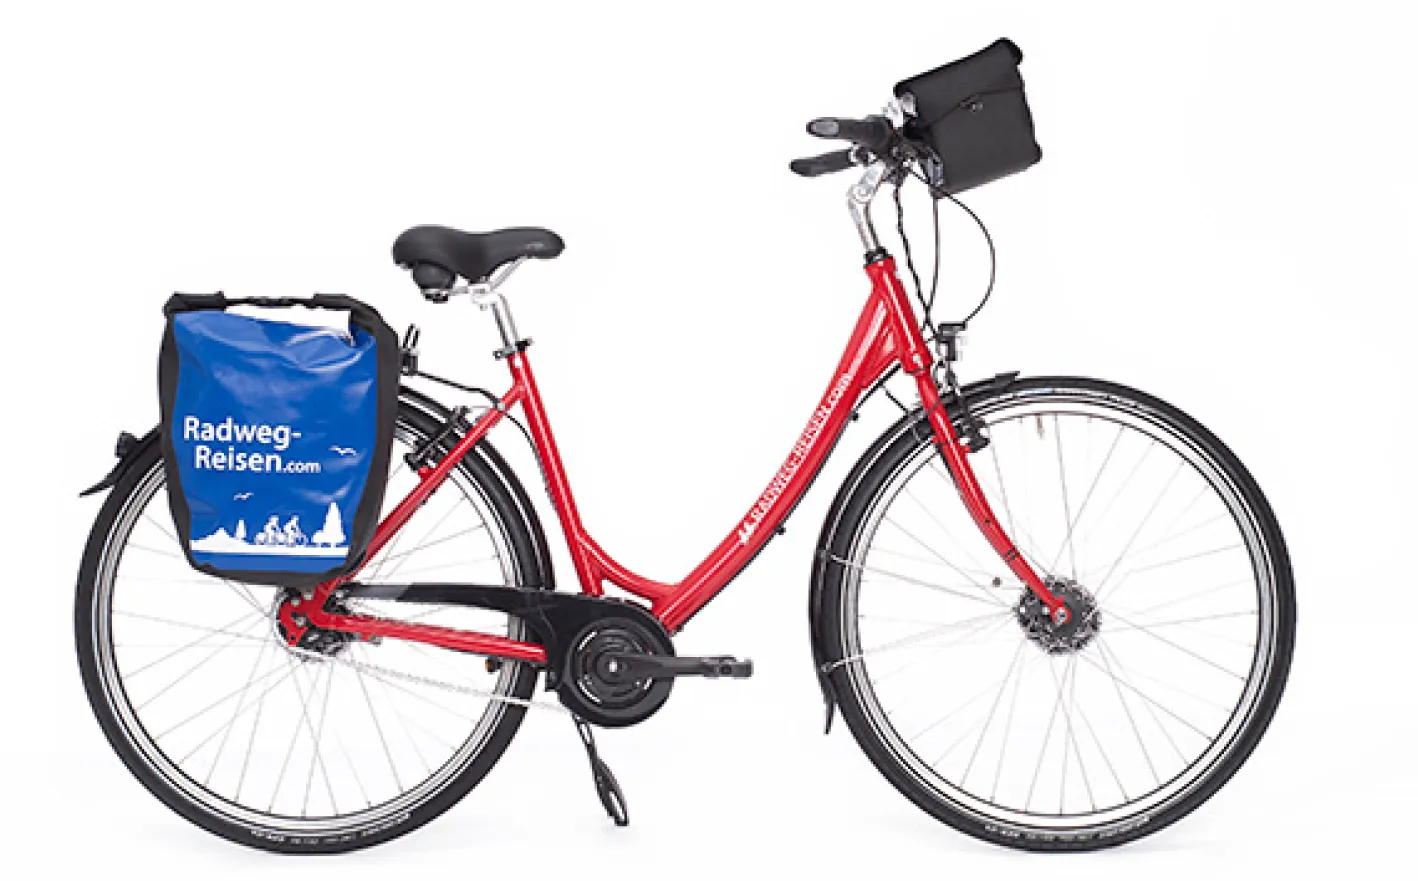 Bike for rent from Radweg-Reisen